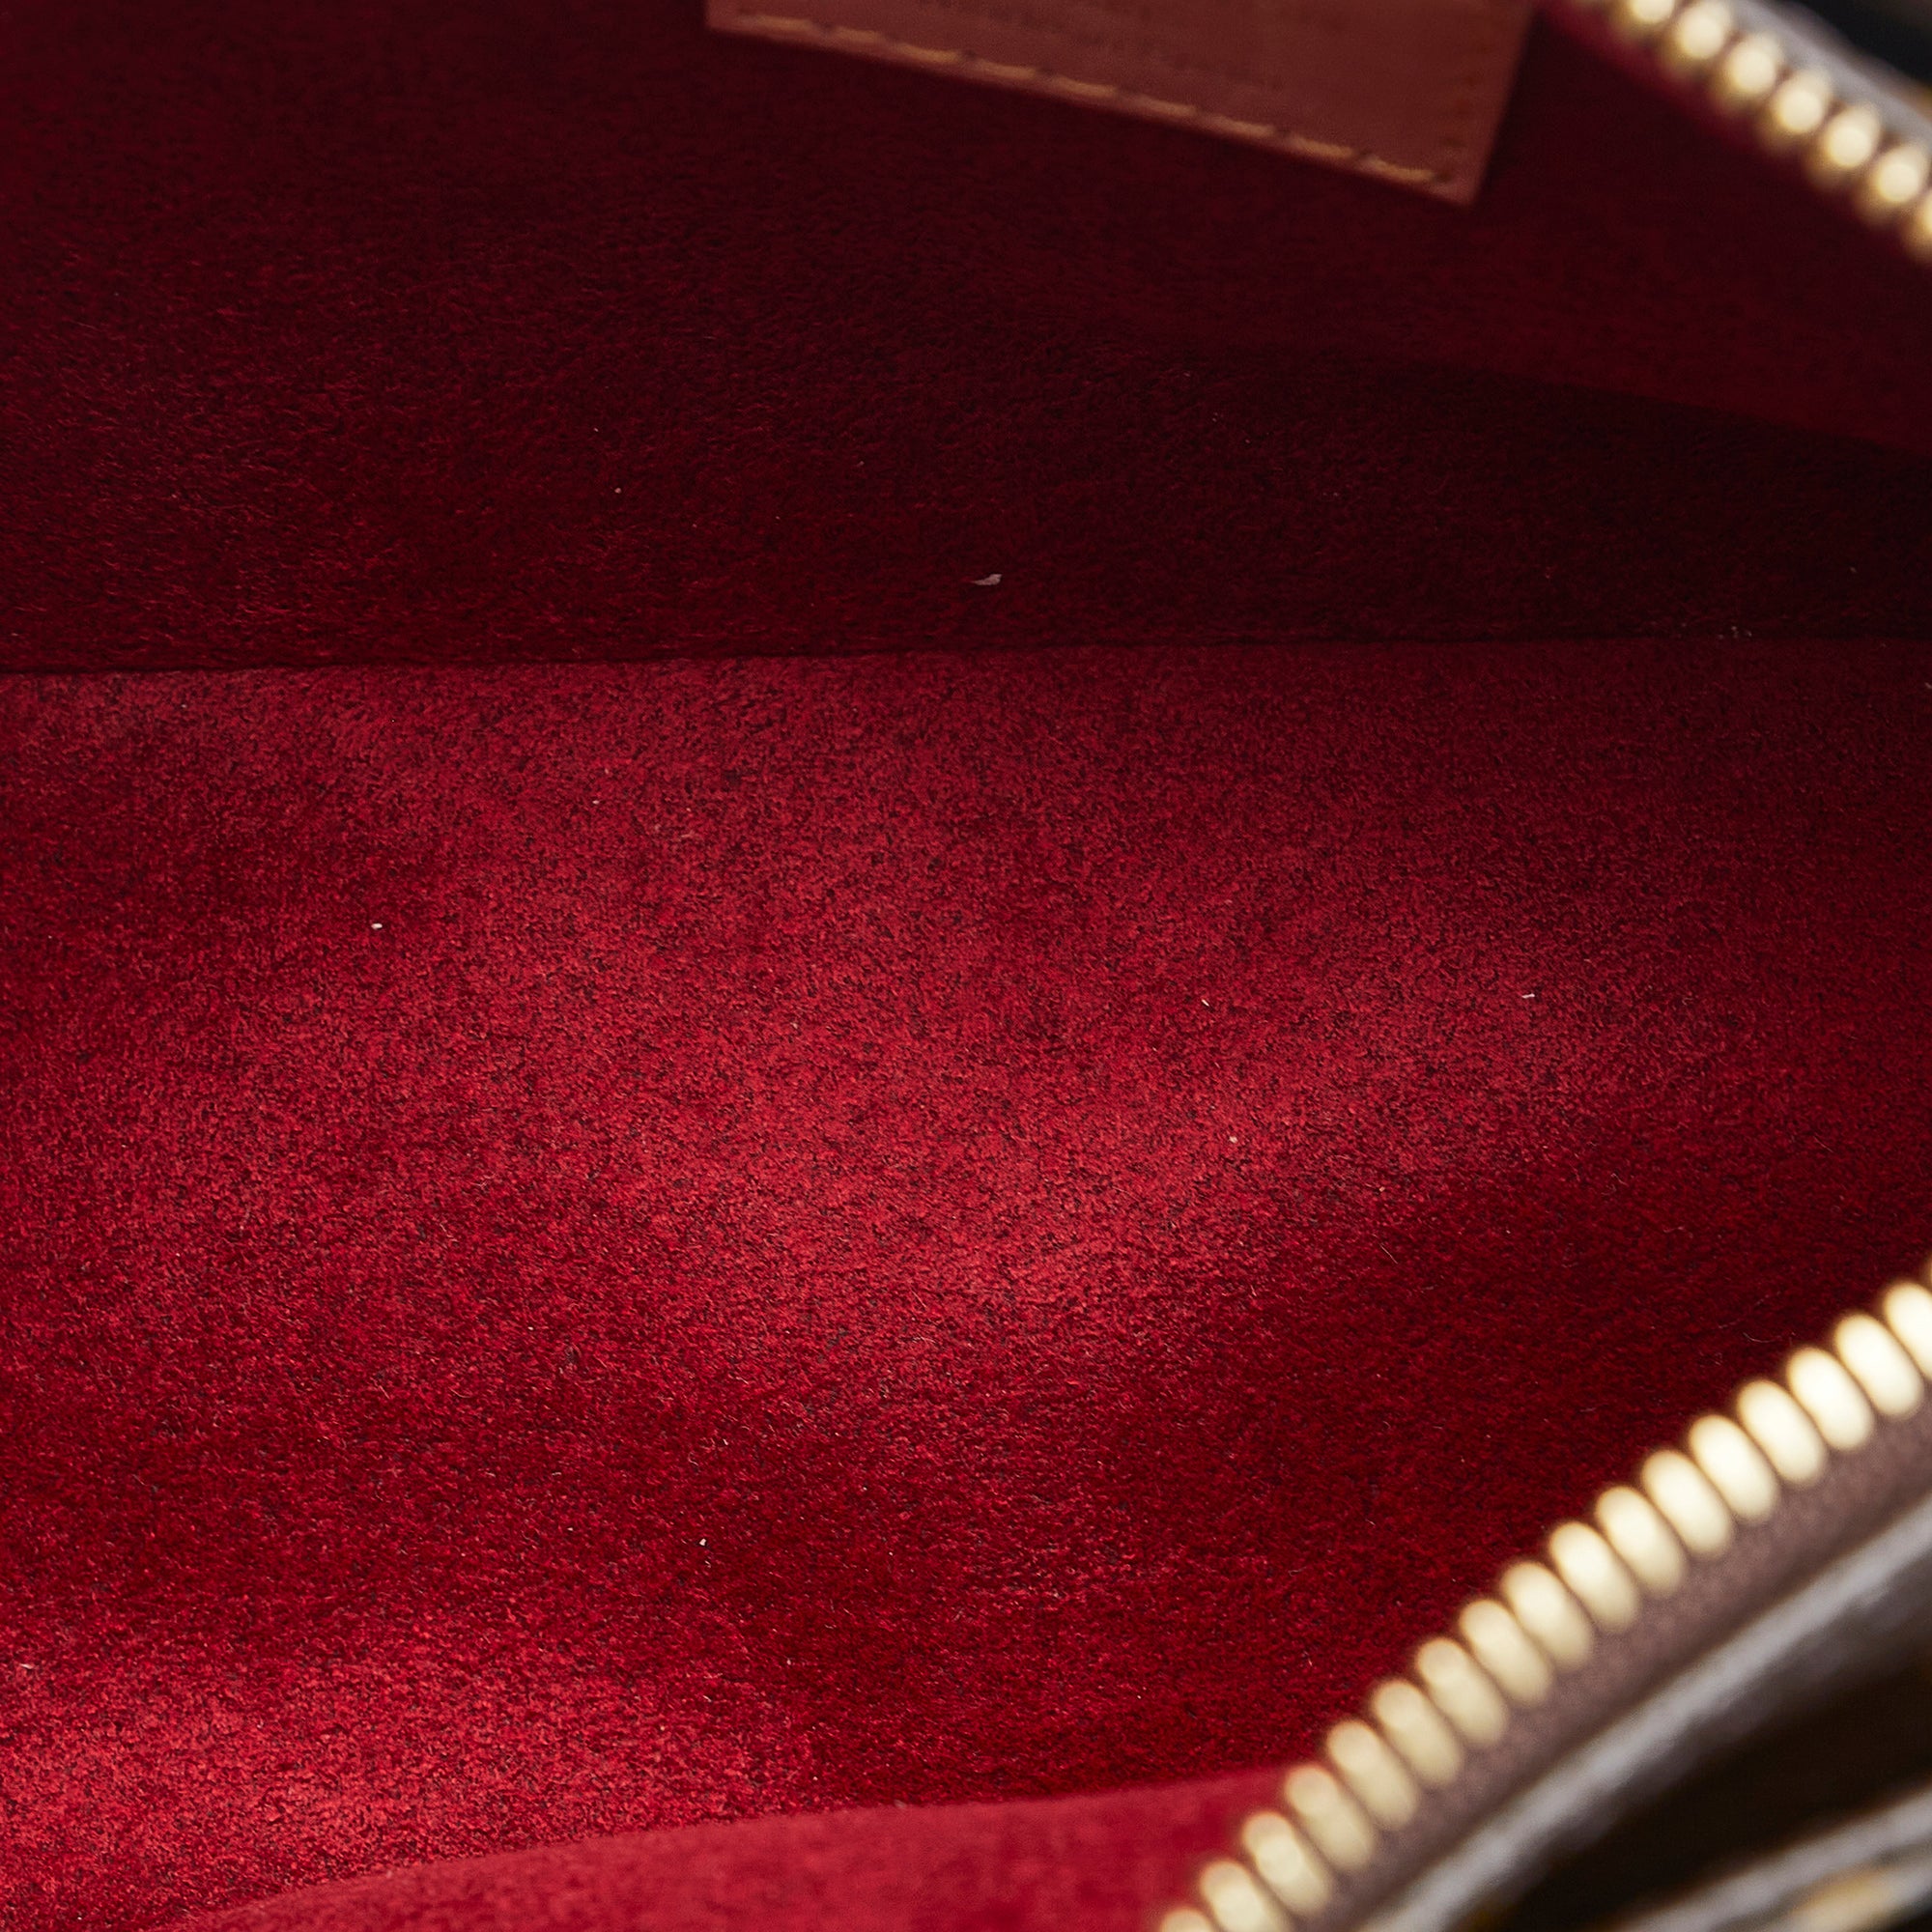 Viva cité leather handbag Louis Vuitton Brown in Leather - 21856419